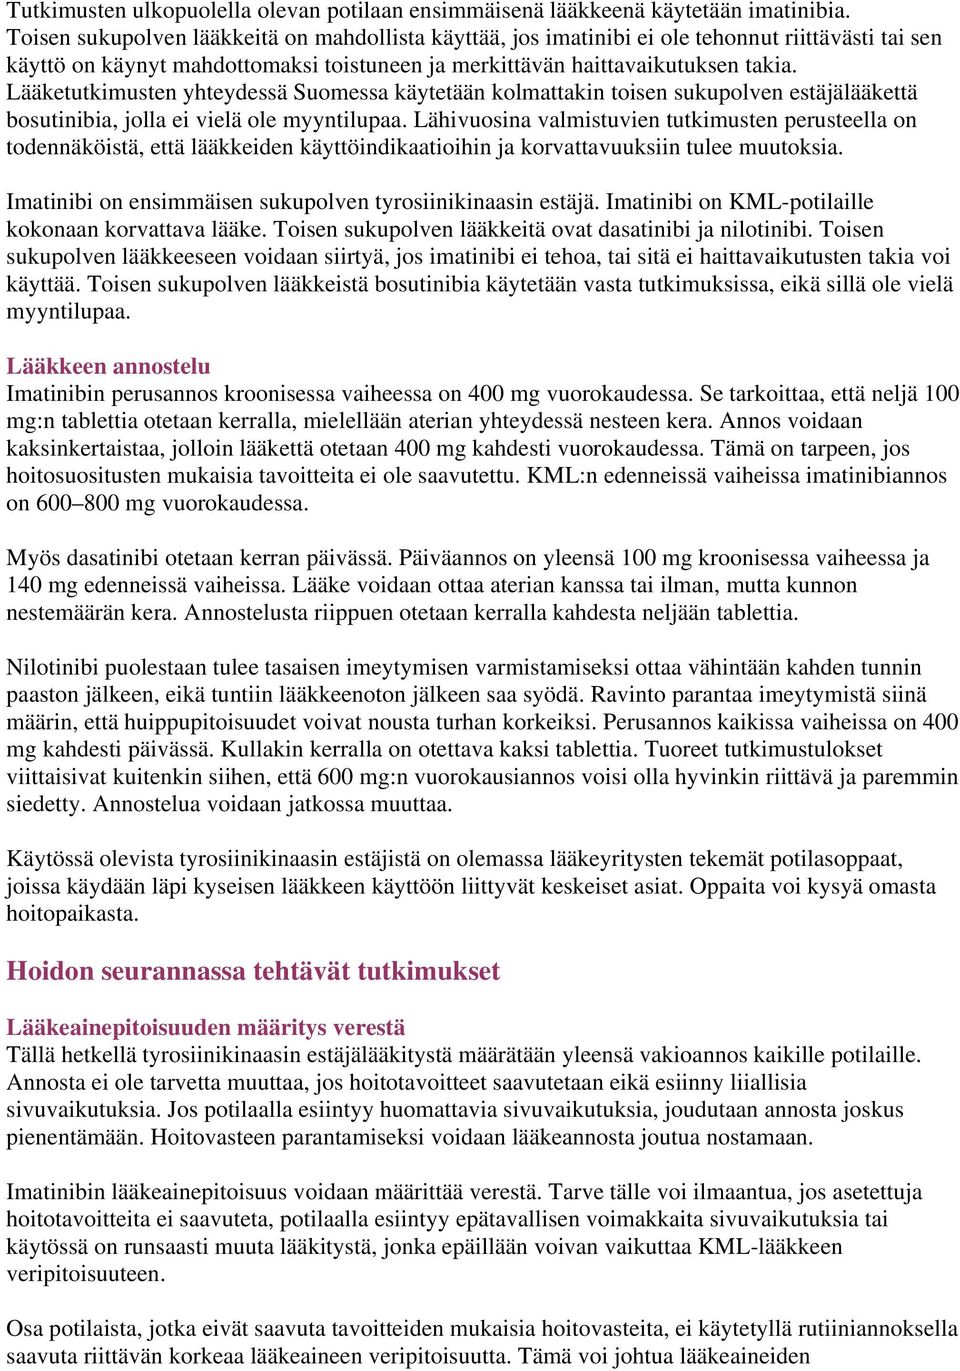 Lääketutkimusten yhteydessä Suomessa käytetään kolmattakin toisen sukupolven estäjälääkettä bosutinibia, jolla ei vielä ole myyntilupaa.